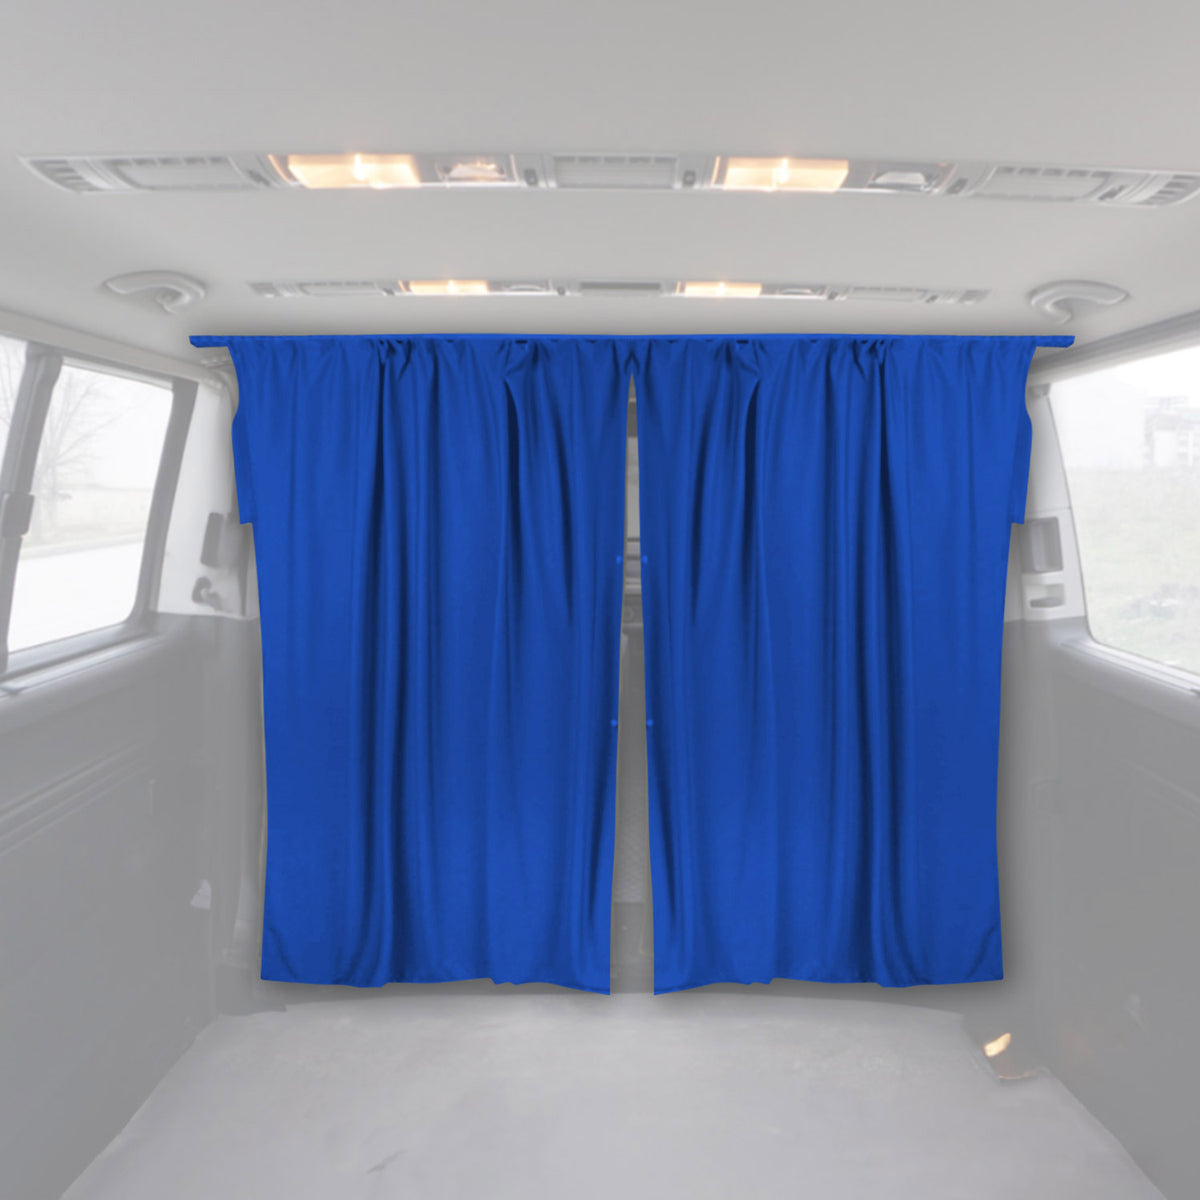 Fahrerhaus Führerhaus Gardinen Sonnenschutz für Peugeot Boxer H2 Blau 2tlg